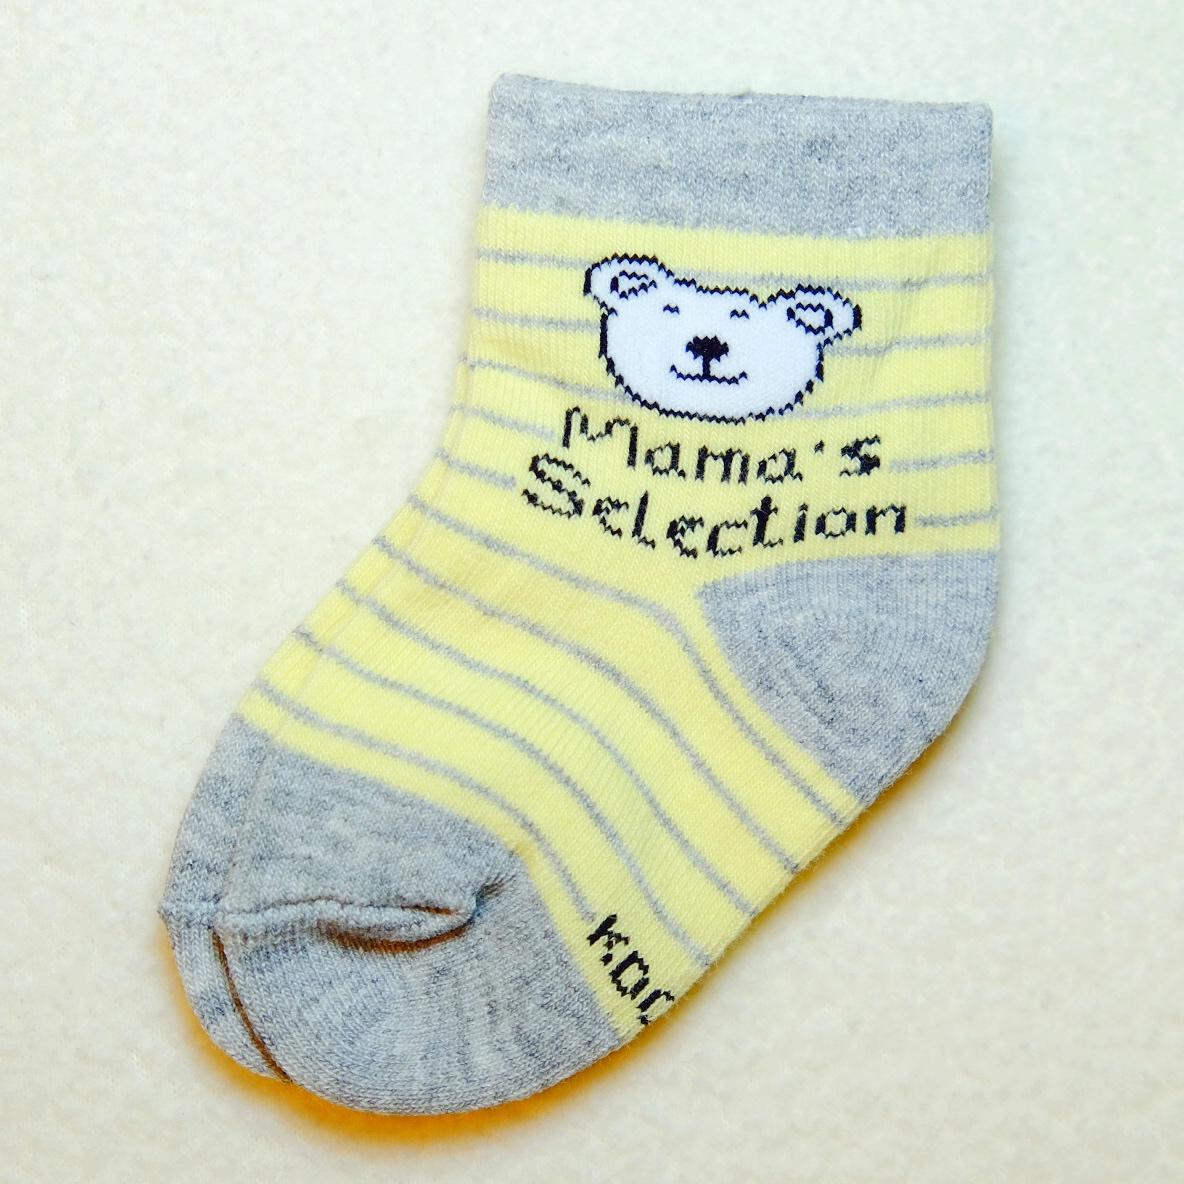 ถุงเท้าเด็ก มี6สี ลายหมีสุดน่ารัก เนื้อดี  1คู่  อายุ0-2ปี